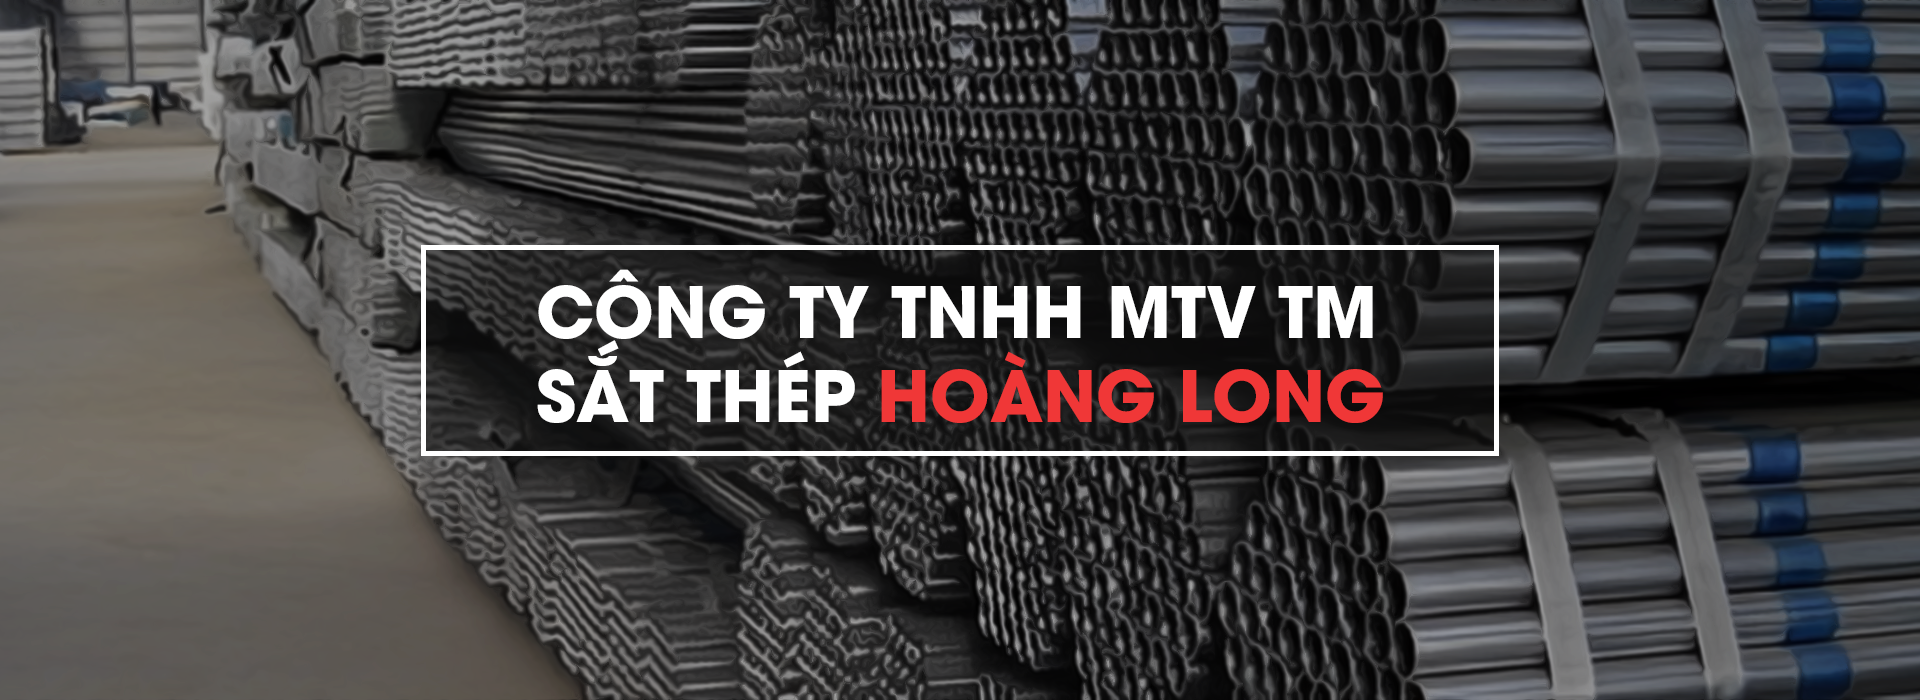 CÔNG TY TNHH MTV THƯƠNG MẠI SẮT THÉP HOÀNG LONG